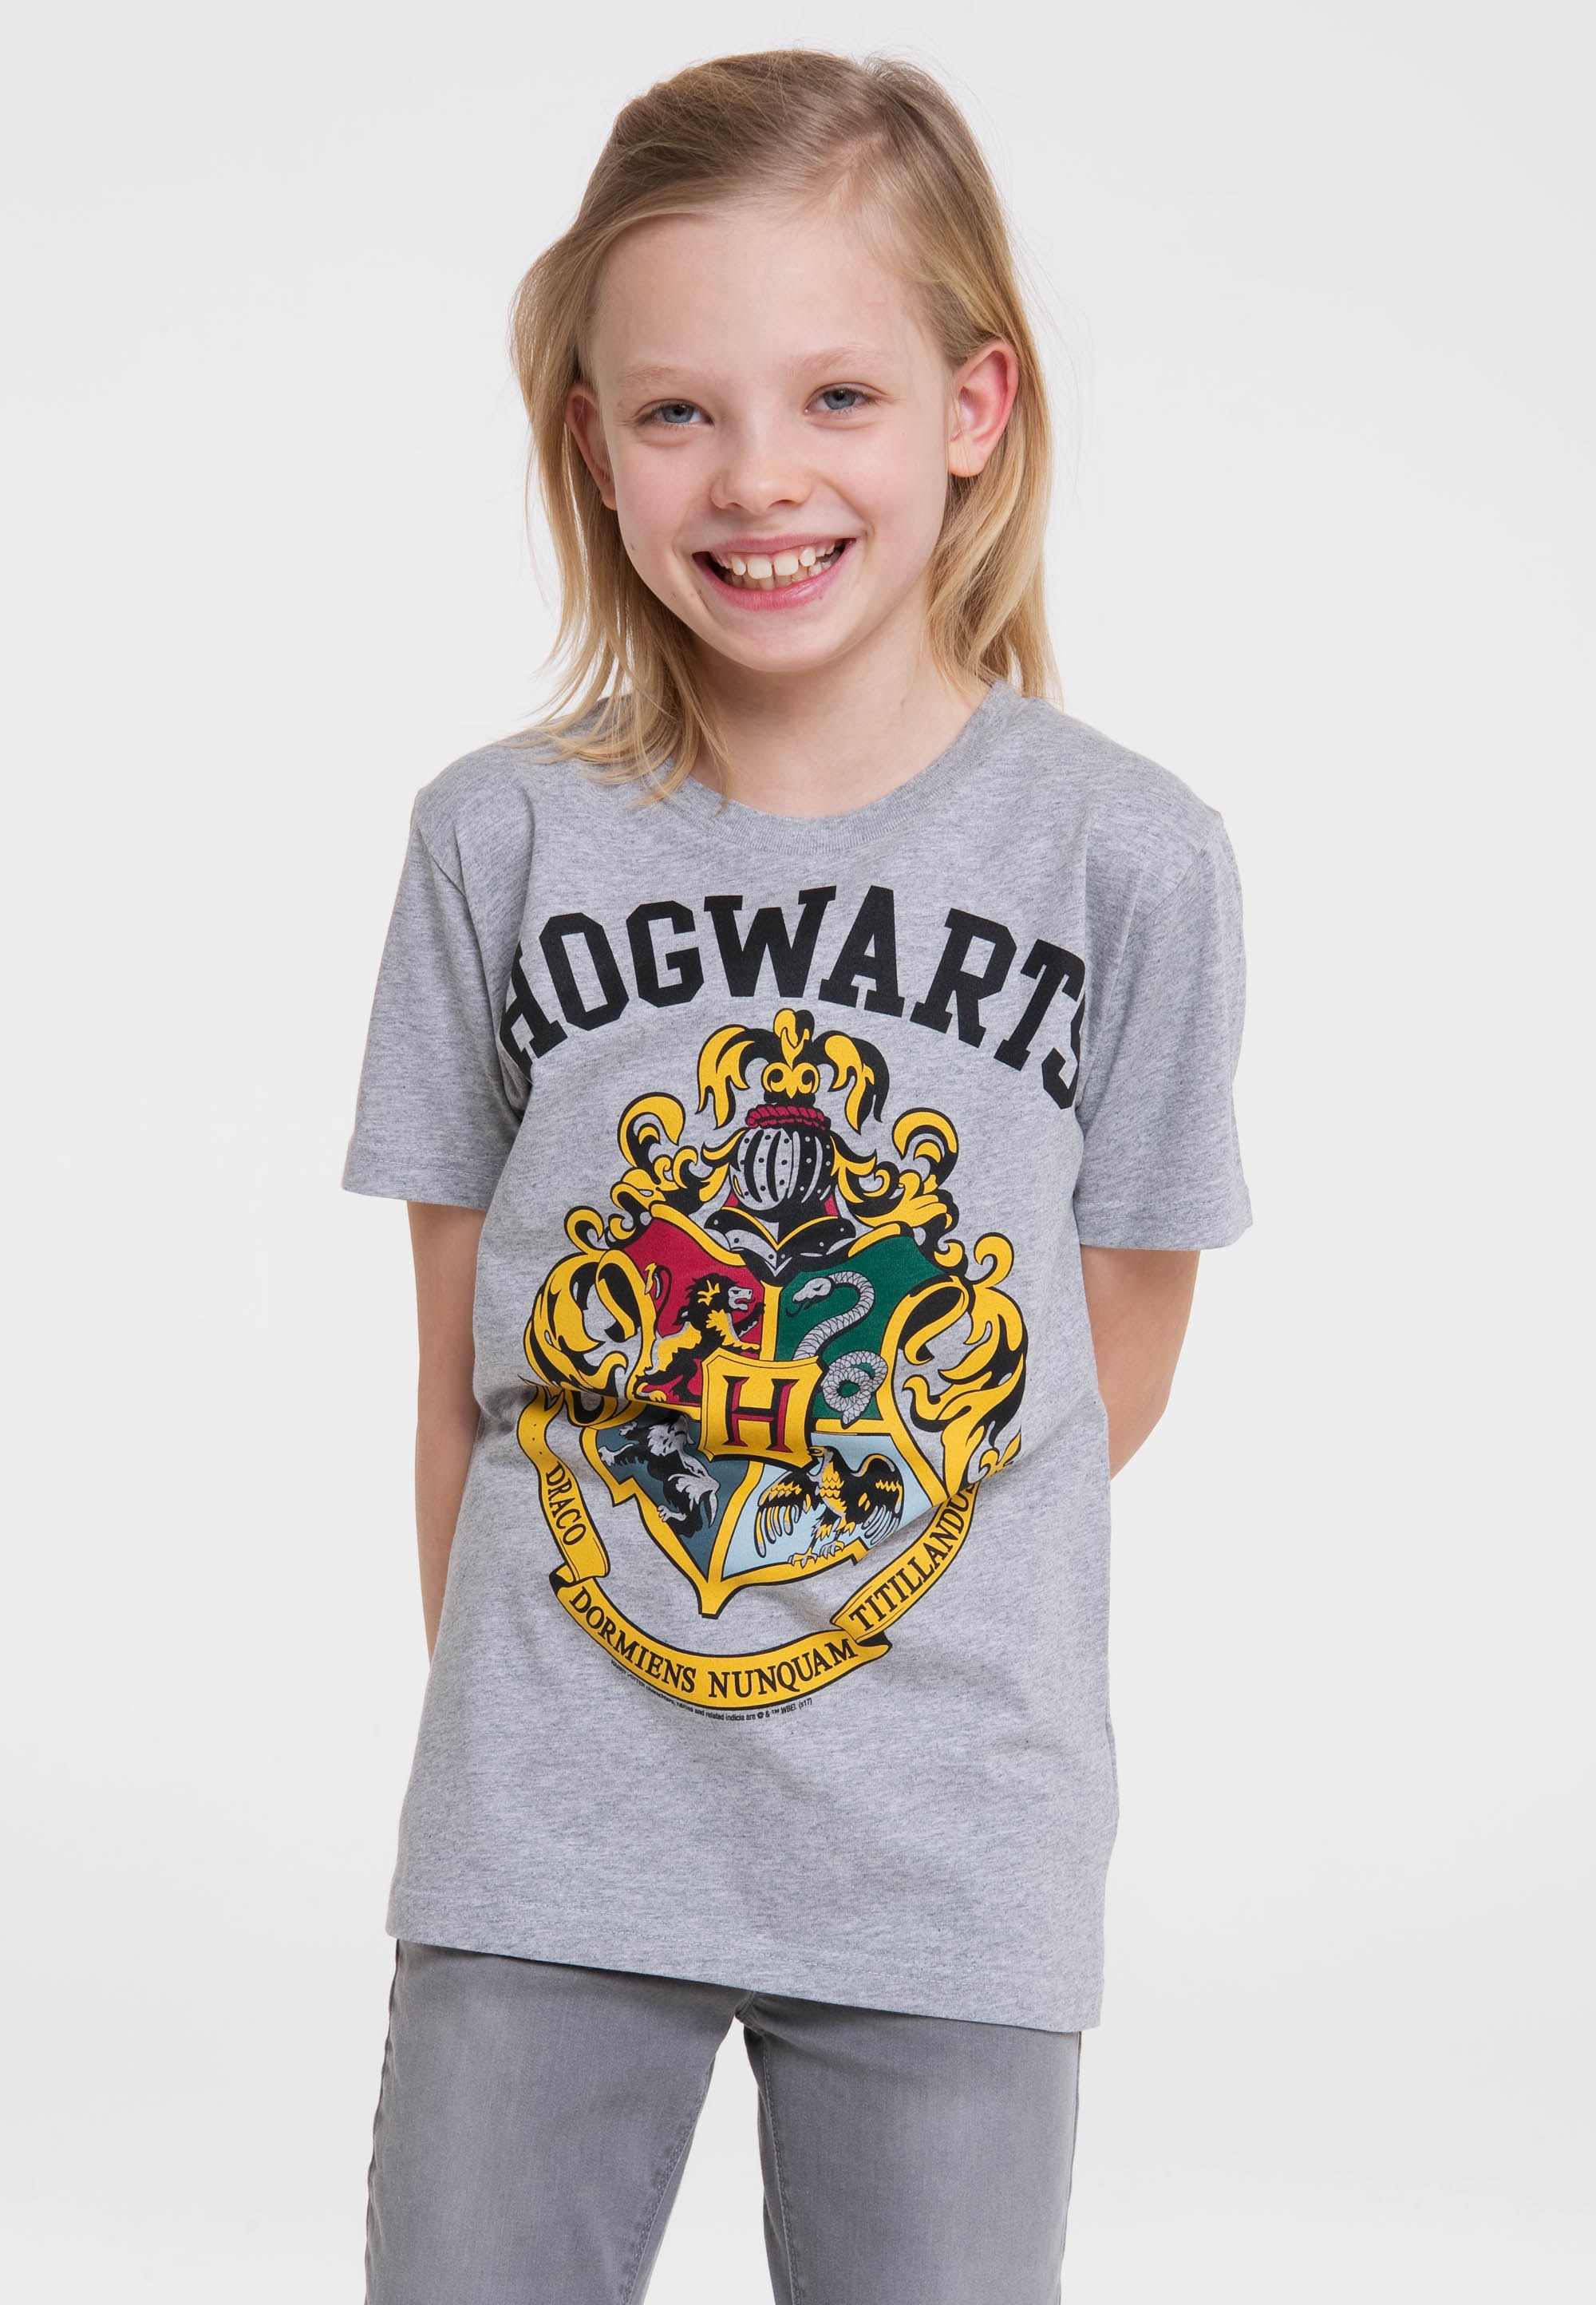 Logoshirt Marškinėliai »Hogwarts« su lässigem Fr...